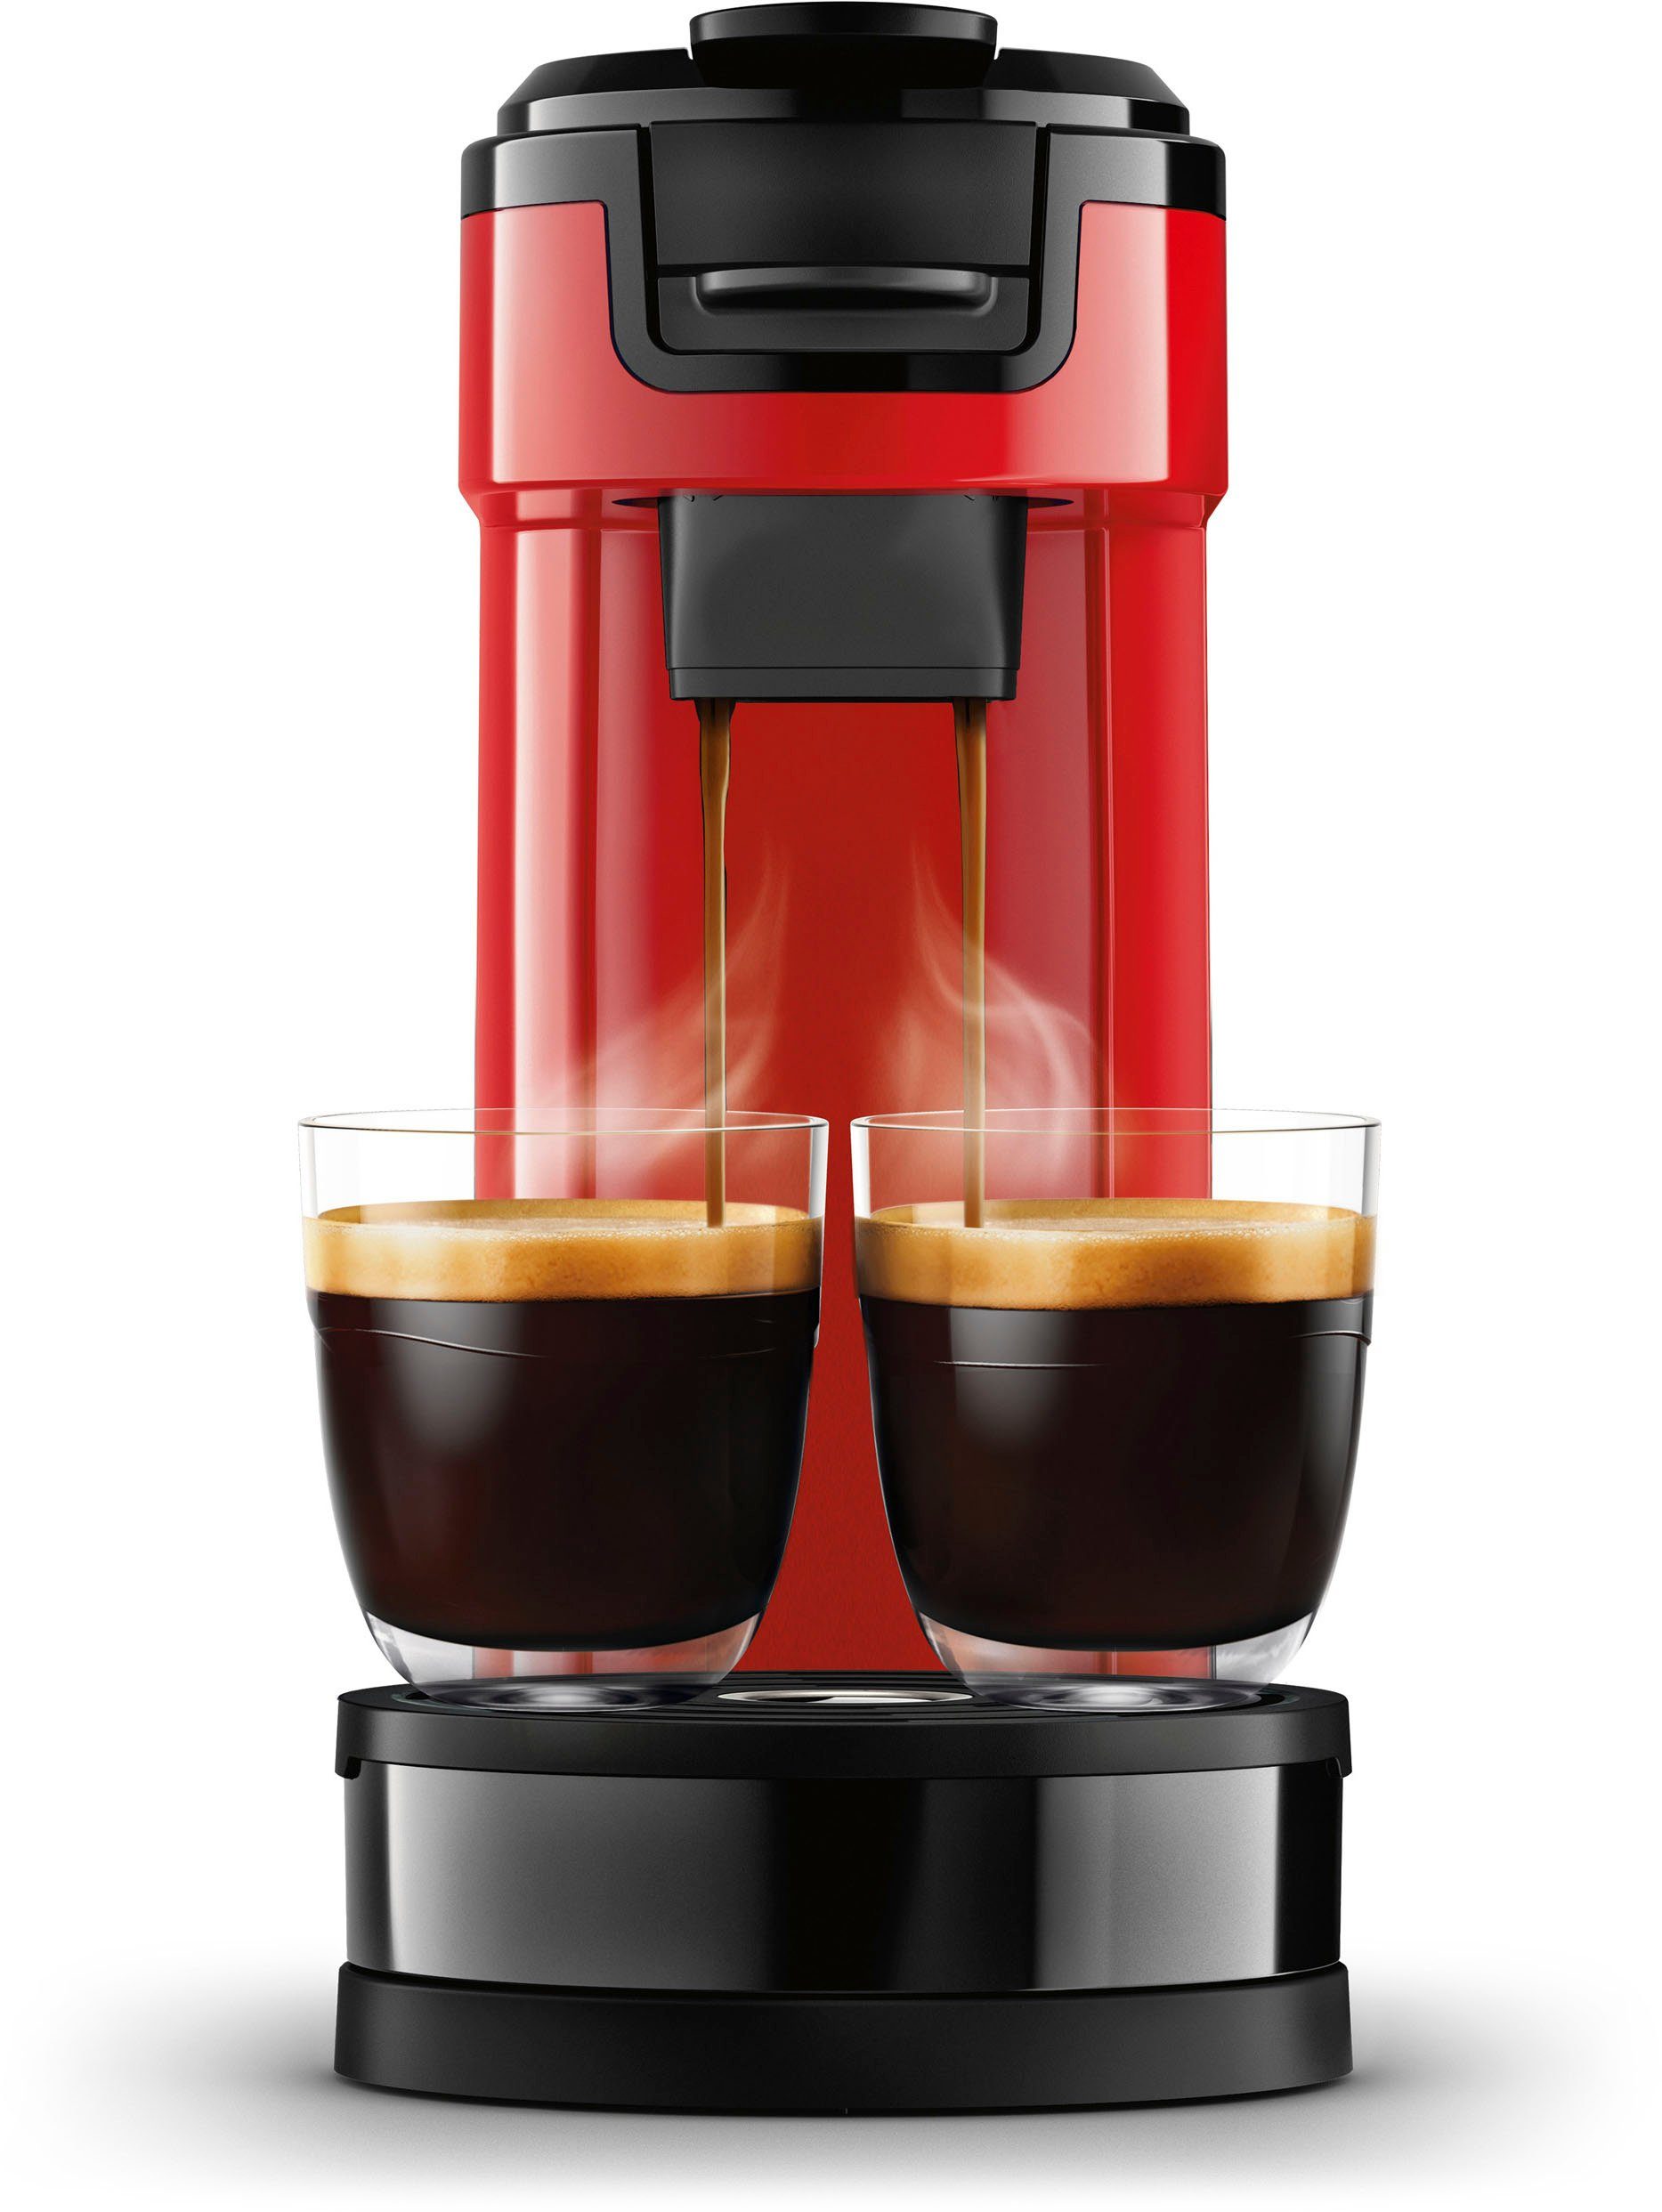 Wert Kaffeekanne, von Philips UVP Switch Kaffeepadmaschine € Kaffeepaddose Senseo im HD6592/84, 9,90 1l inkl.